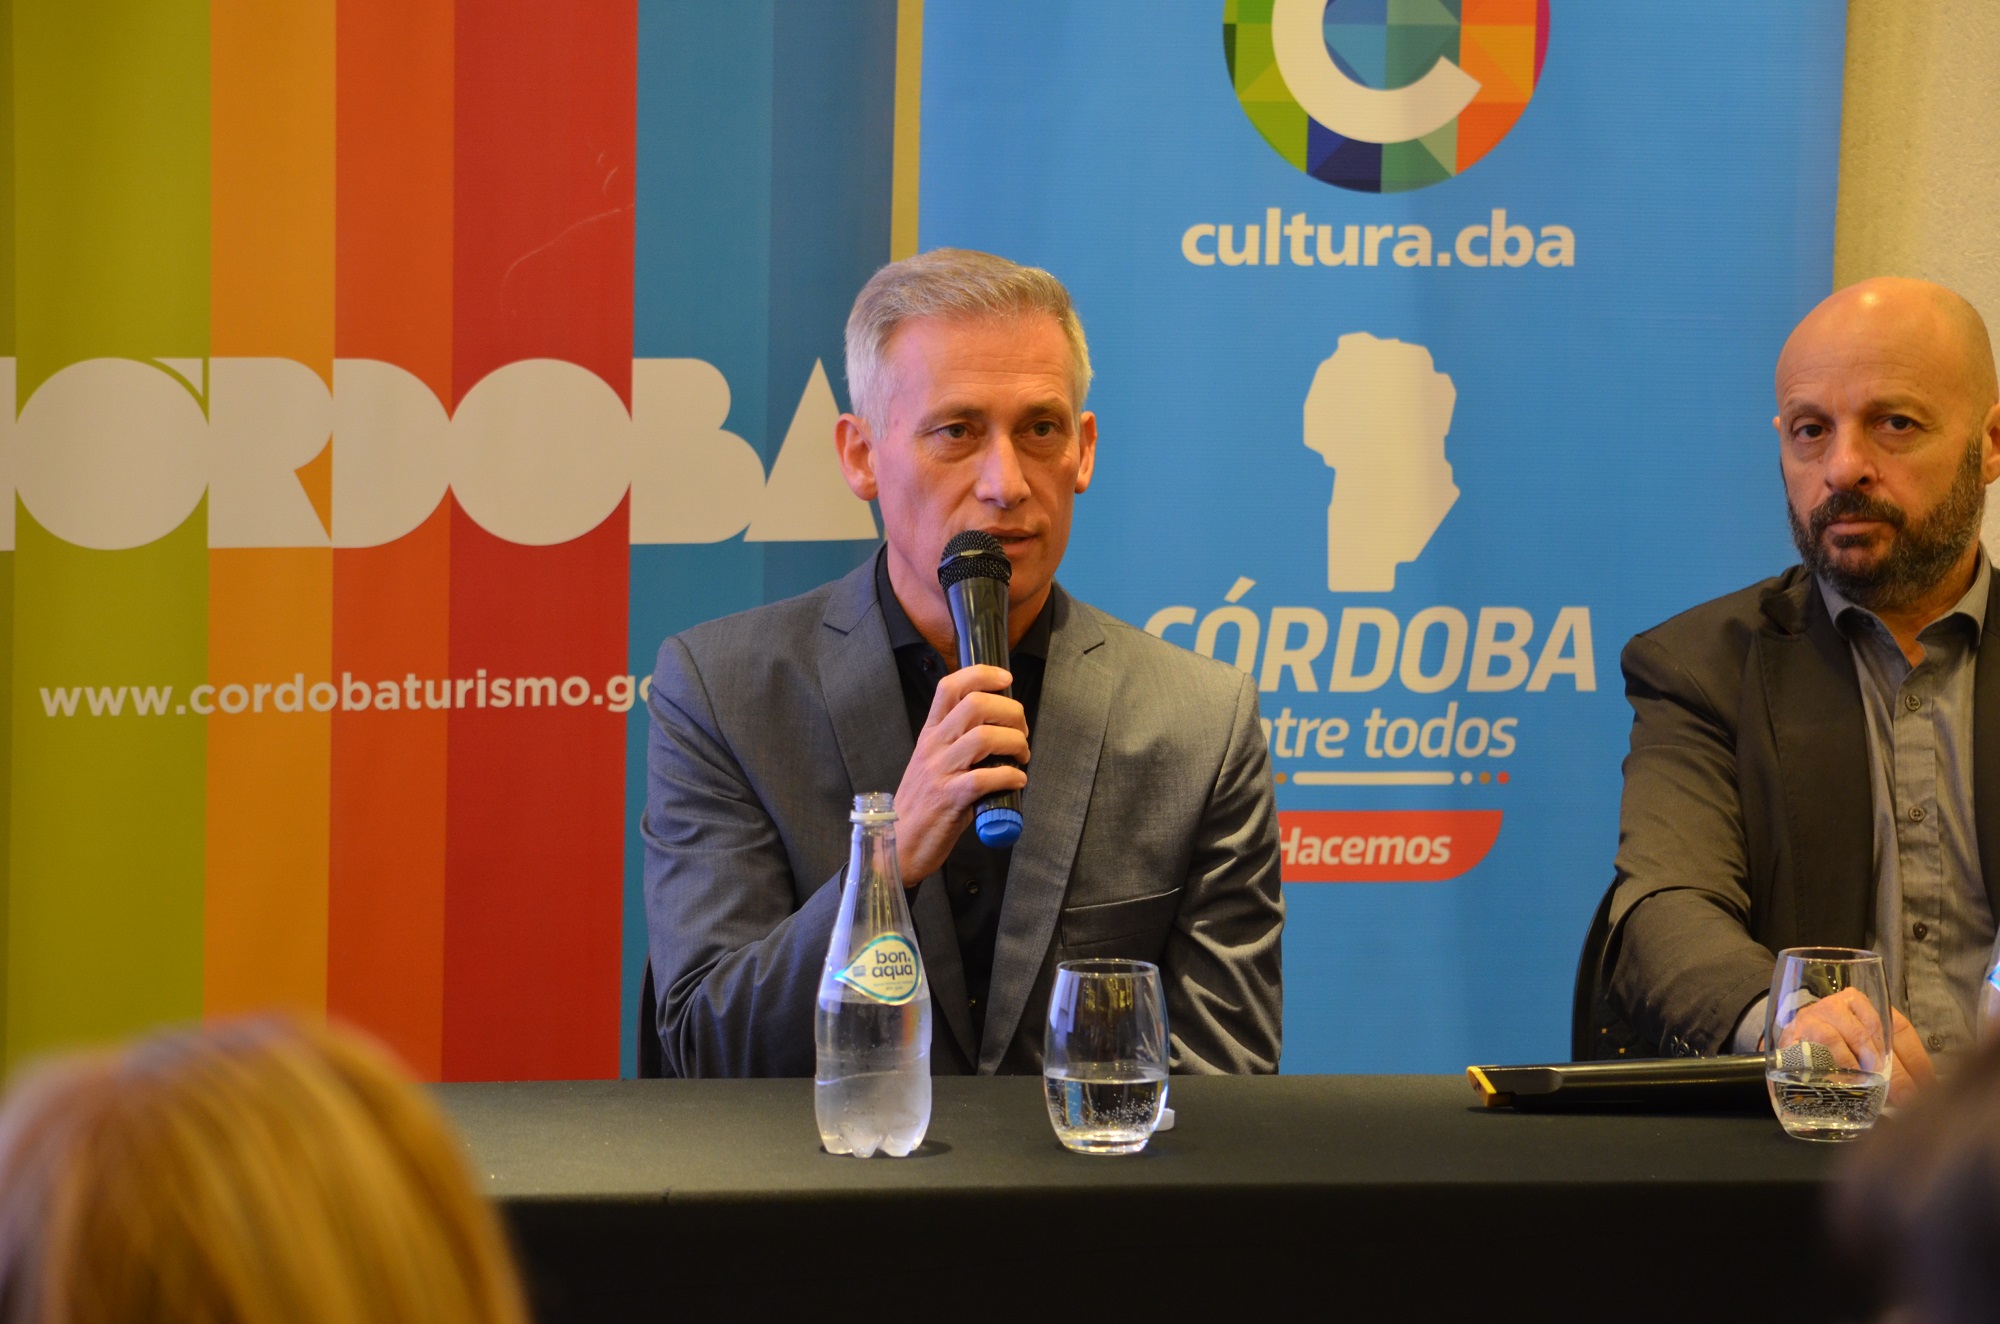 Córdoba presentó la programación turística y cultural para Semana Santa 2023